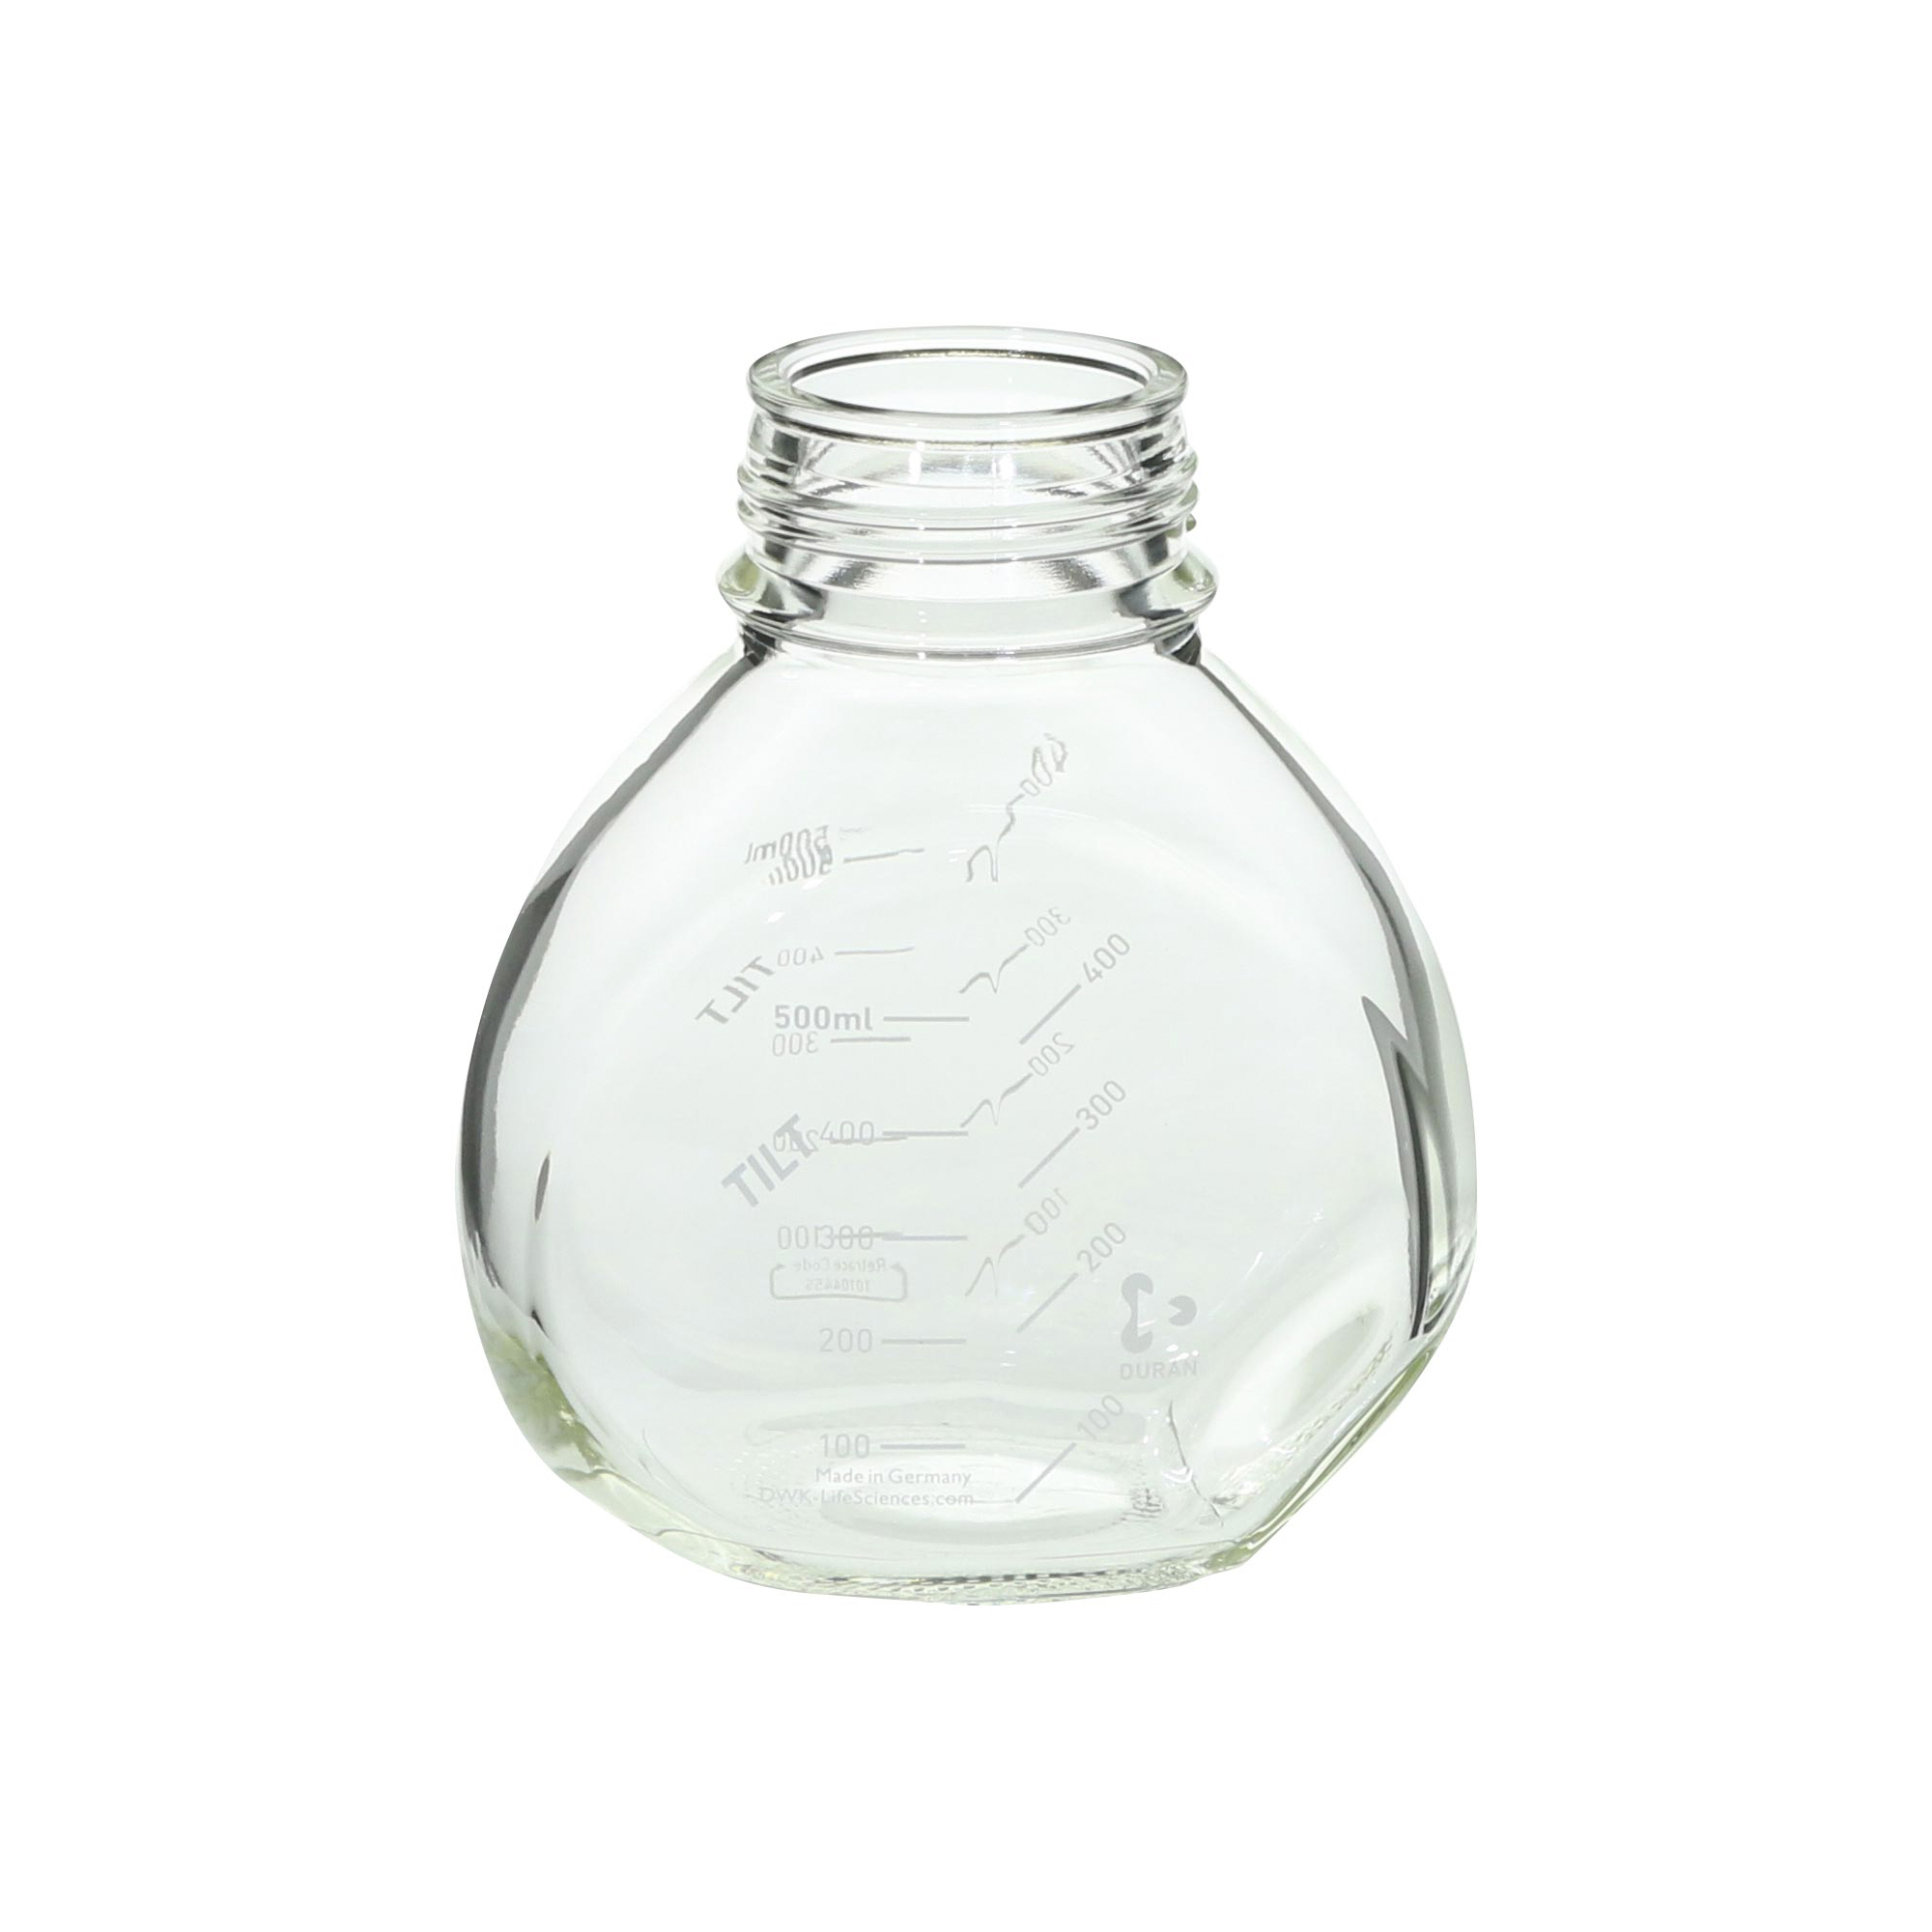 【受注停止】017400-500A DURAN チルトボトル TILT Bottle 500mL(4個) 柴田科学(SIBATA) 印刷